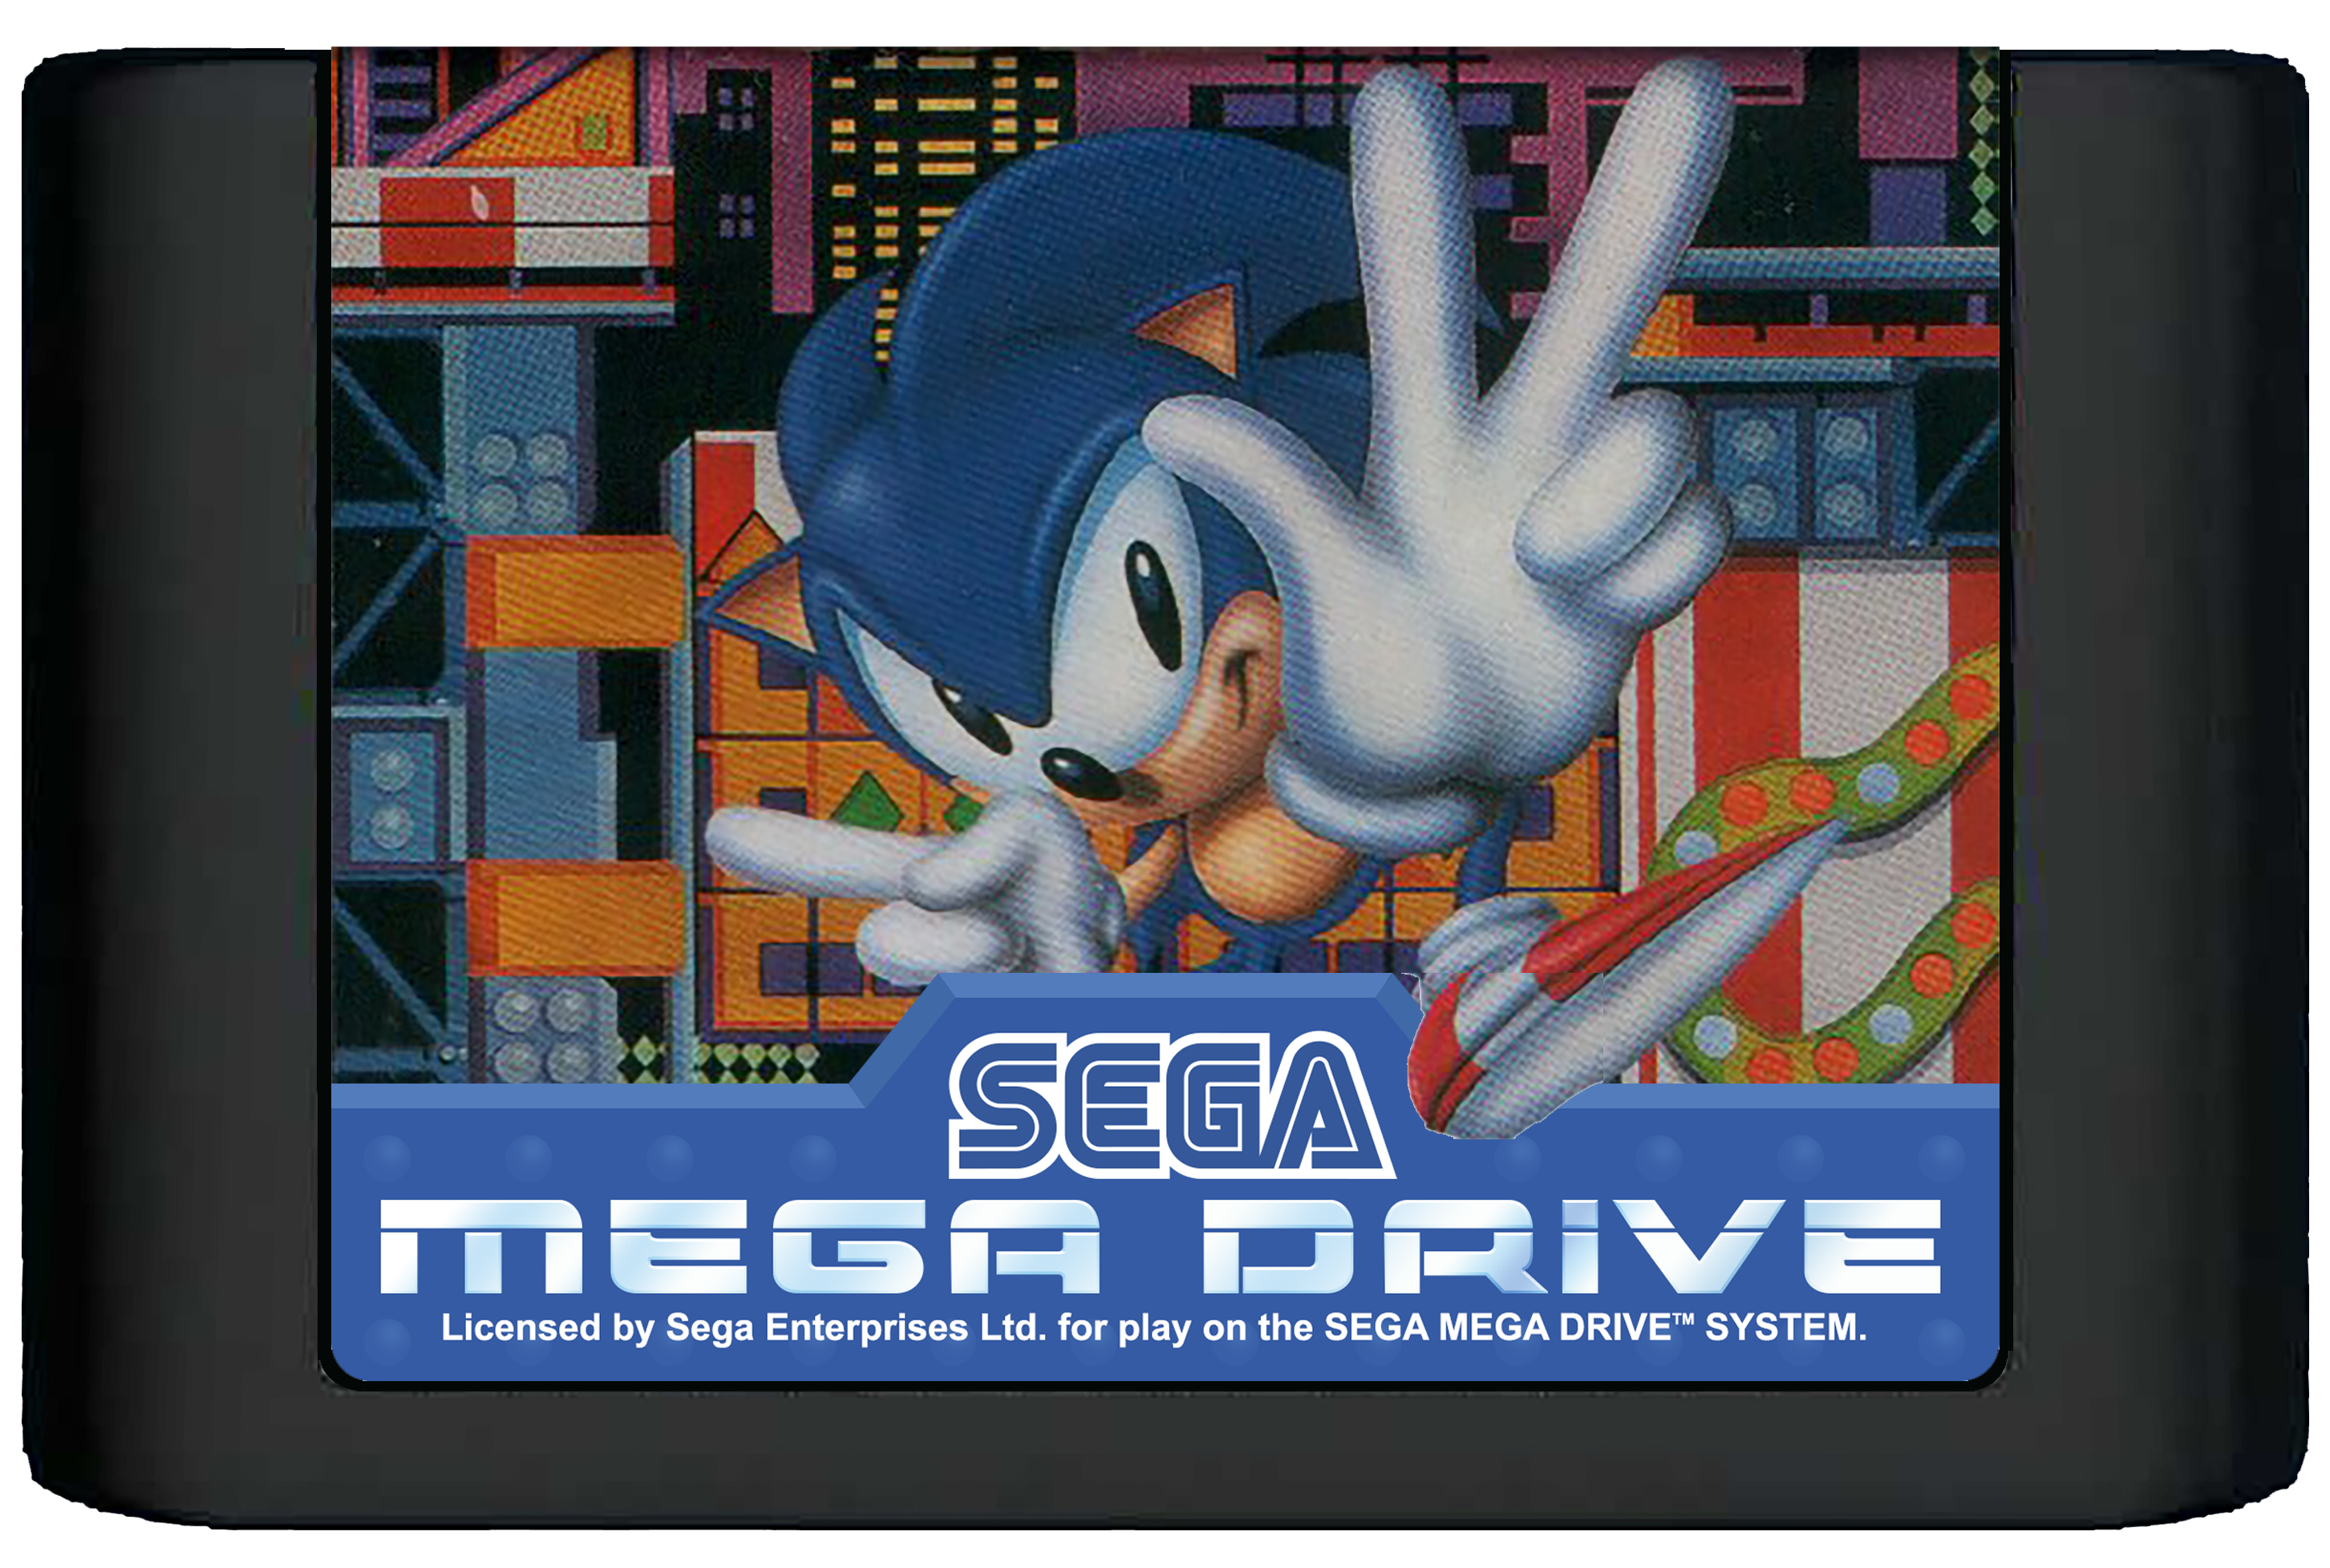 Sega Mega Drive Cartridge Sonic 1. Sonic Cartridge Sega Mega Drive. Картридж Sonic the Hedgehog 2 (Sega Mega Drive). Картридж Sega Megadrive Sonic the Hedgehog. Соник драйв